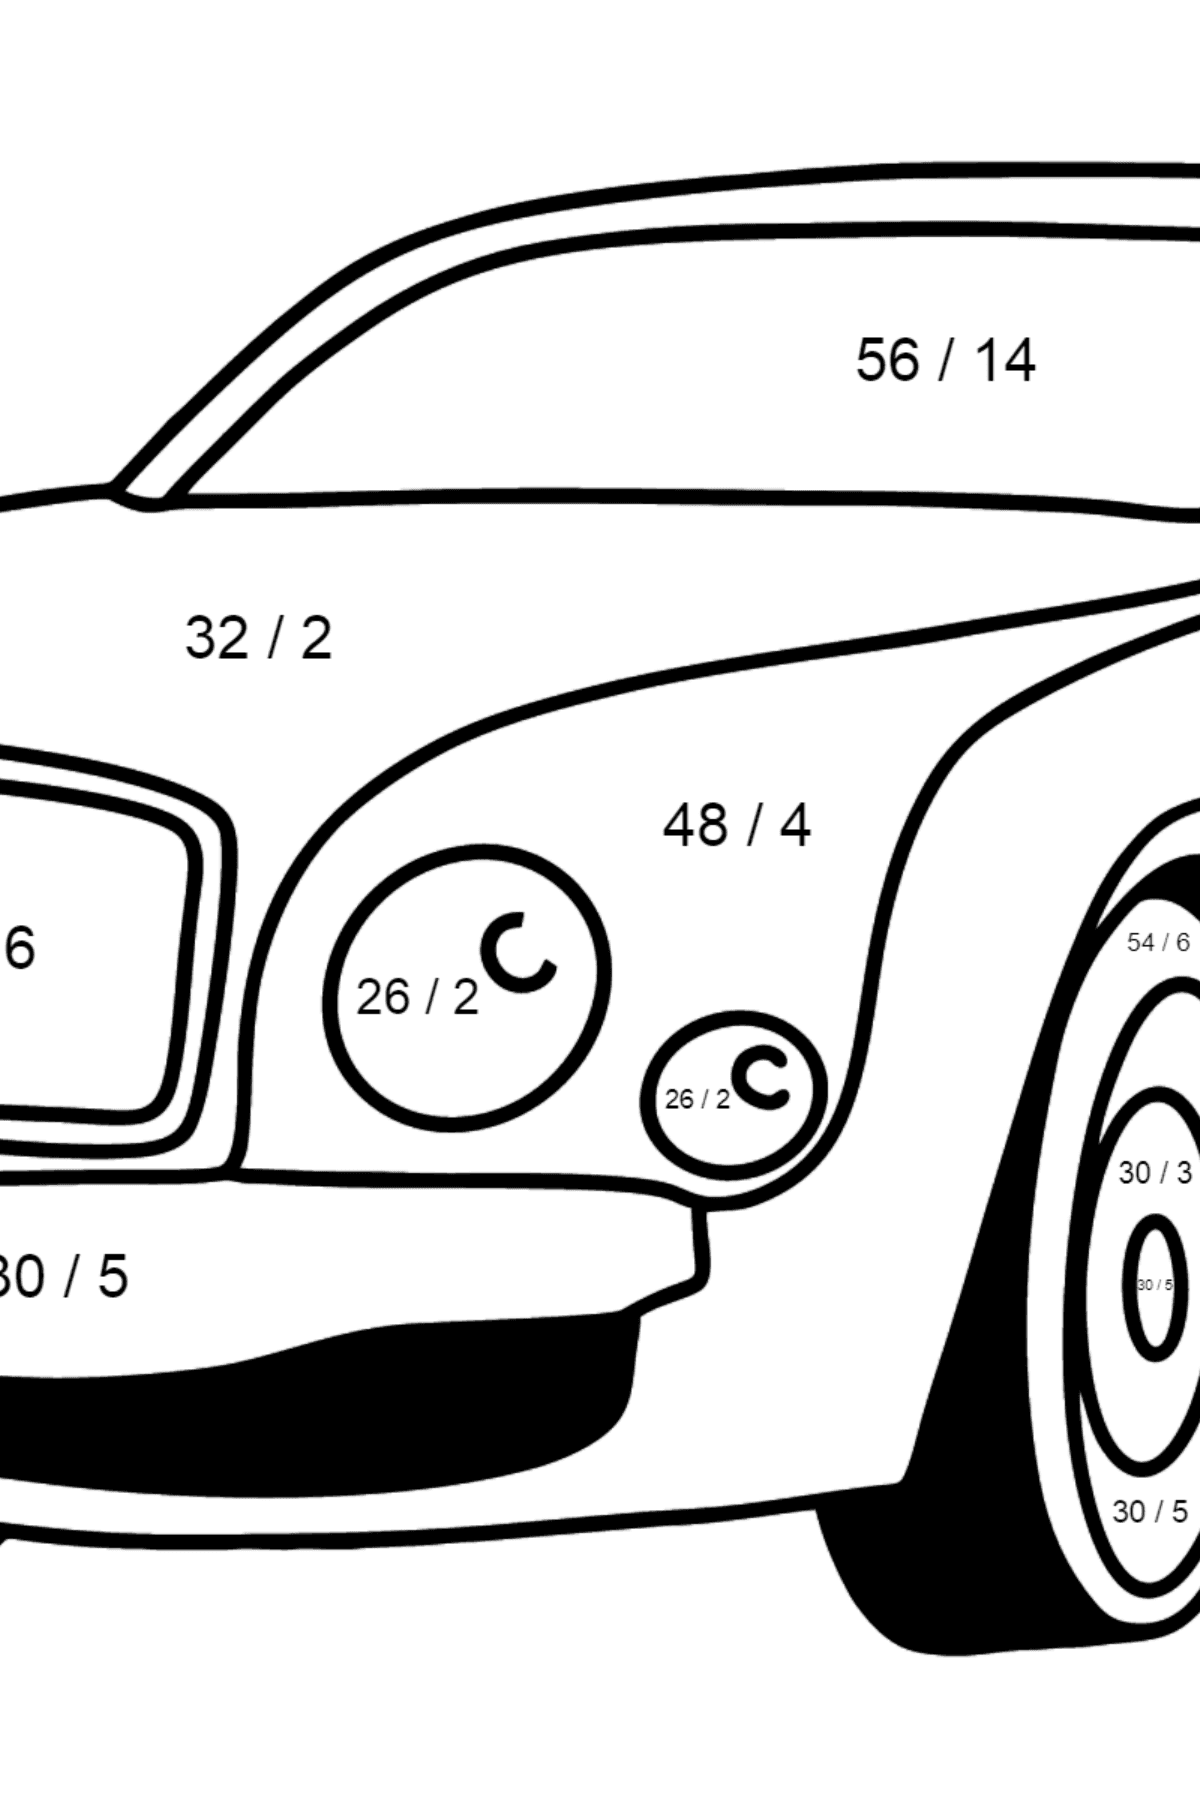 Mewarnai gambar mobil Bentley - Pewarnaan Matematika: Pembagian untuk anak-anak